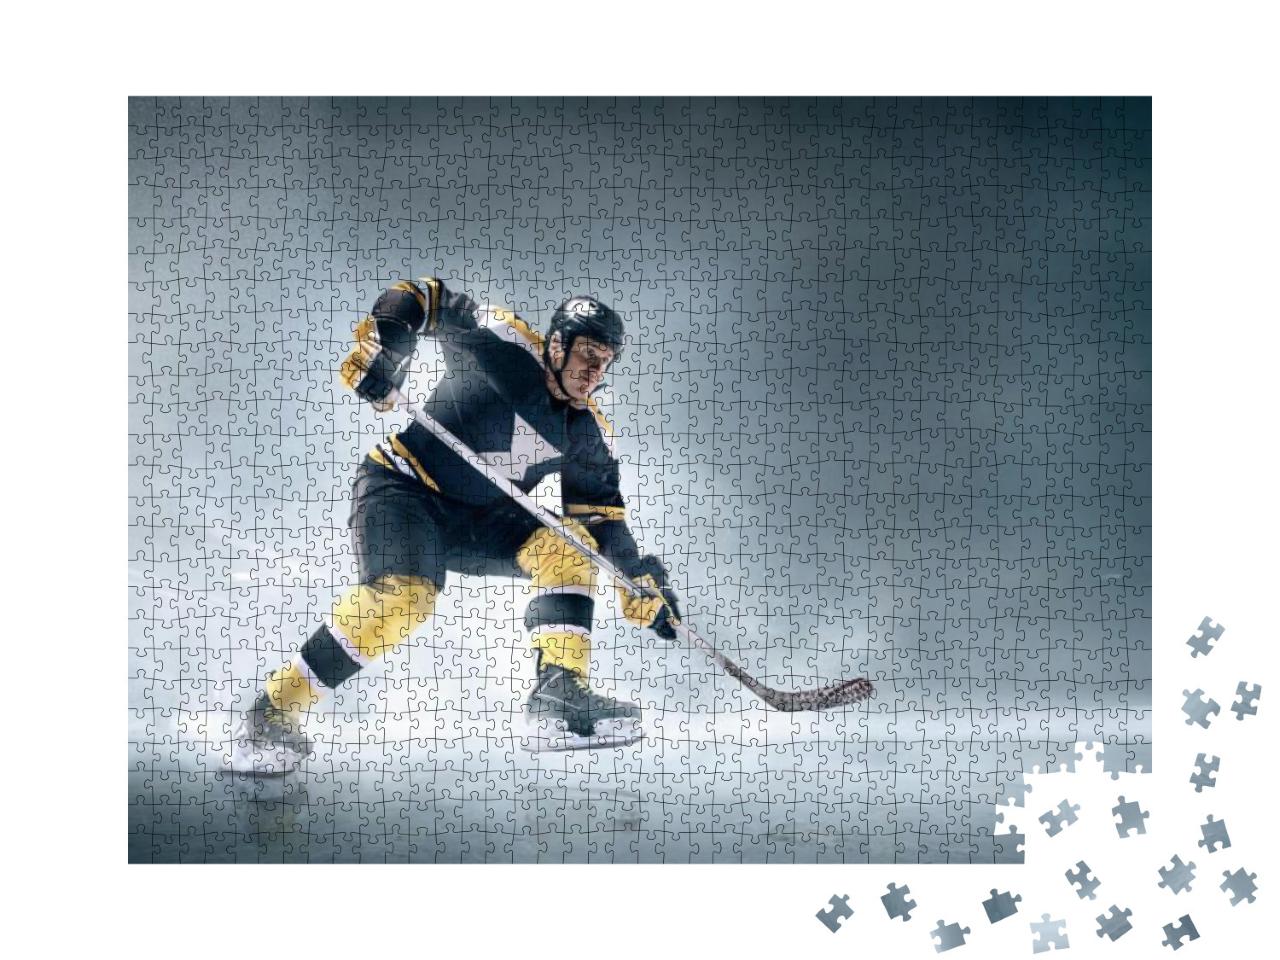 Puzzle 1000 Teile „Eishockeyspieler in Aktion auf dem Eis: Tor!“